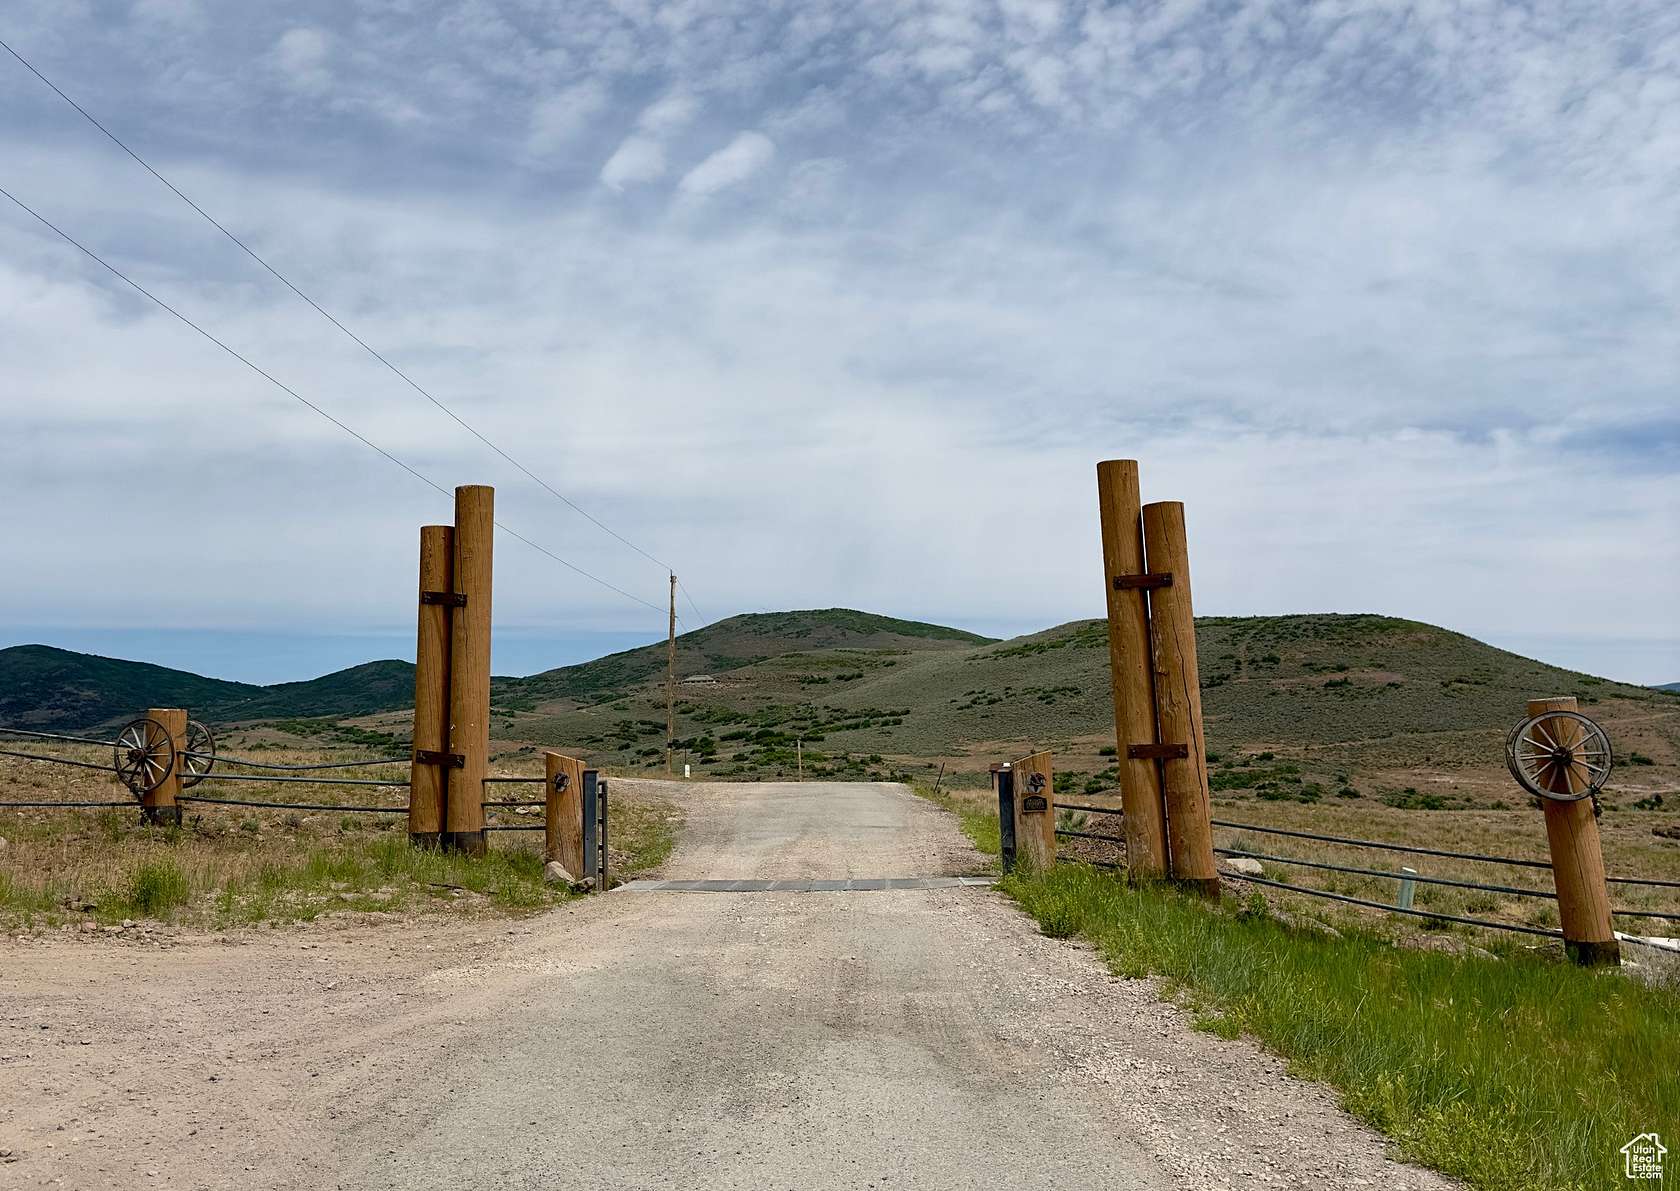 40 Acres of Land for Sale in Kamas, Utah